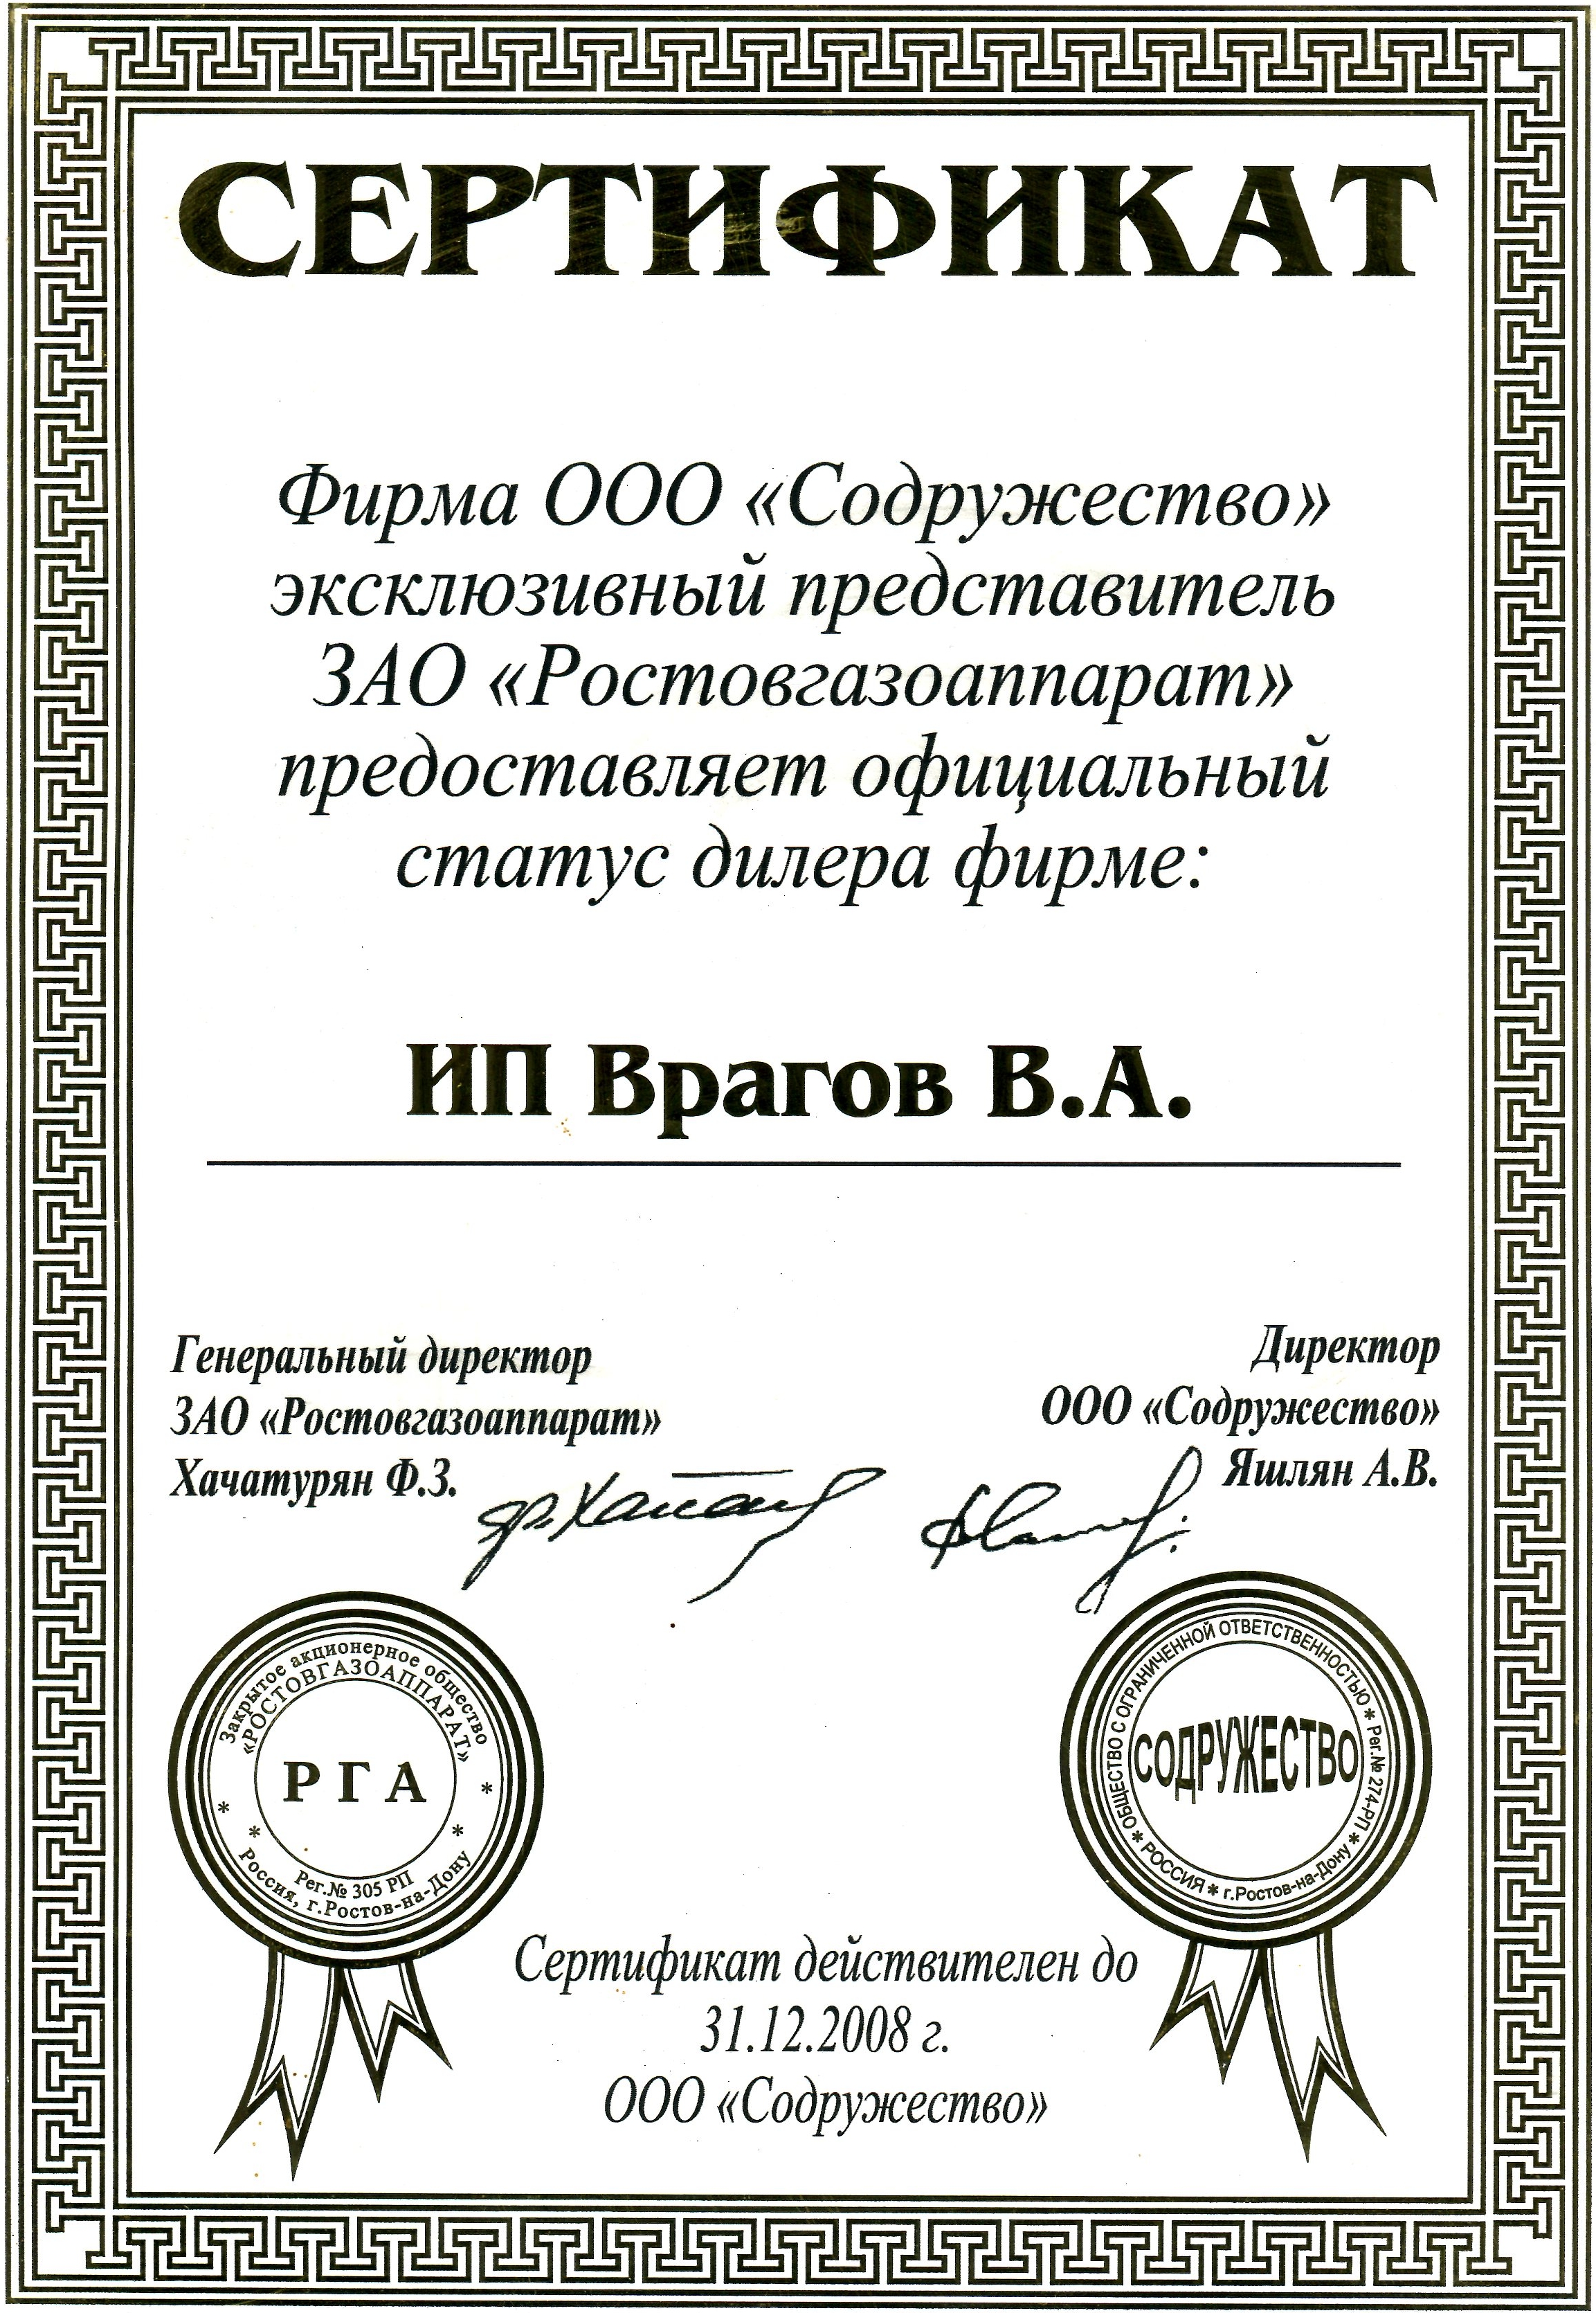 АО Содружество ООО Ростовгазаппарат 2008 г.